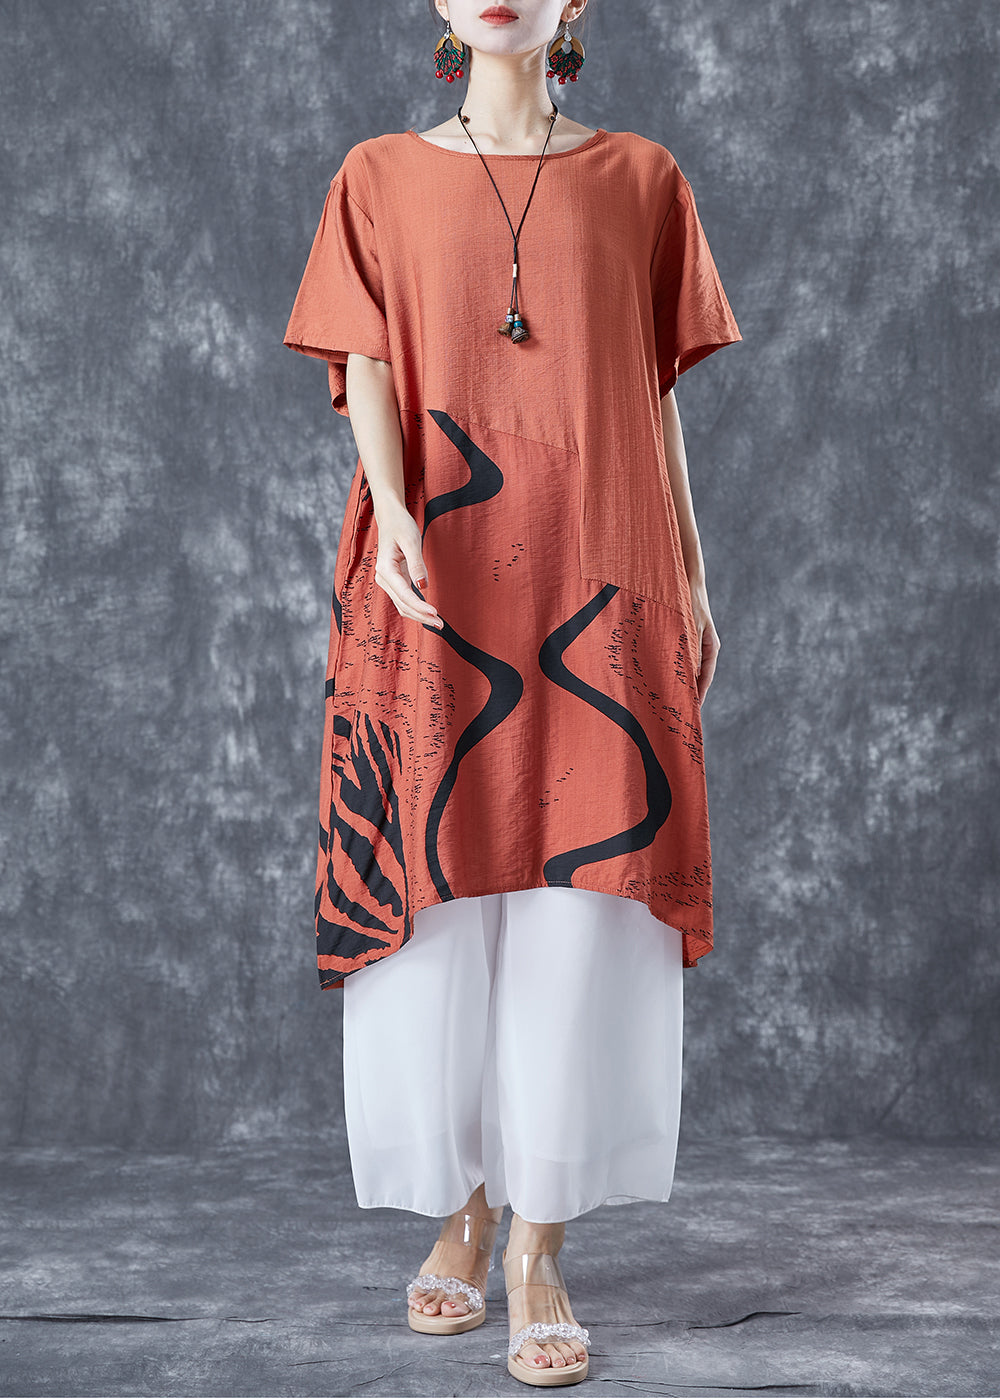 Boho Orange Oversized Patchwork Cotton Dress Summer LY5628 - fabuloryshop